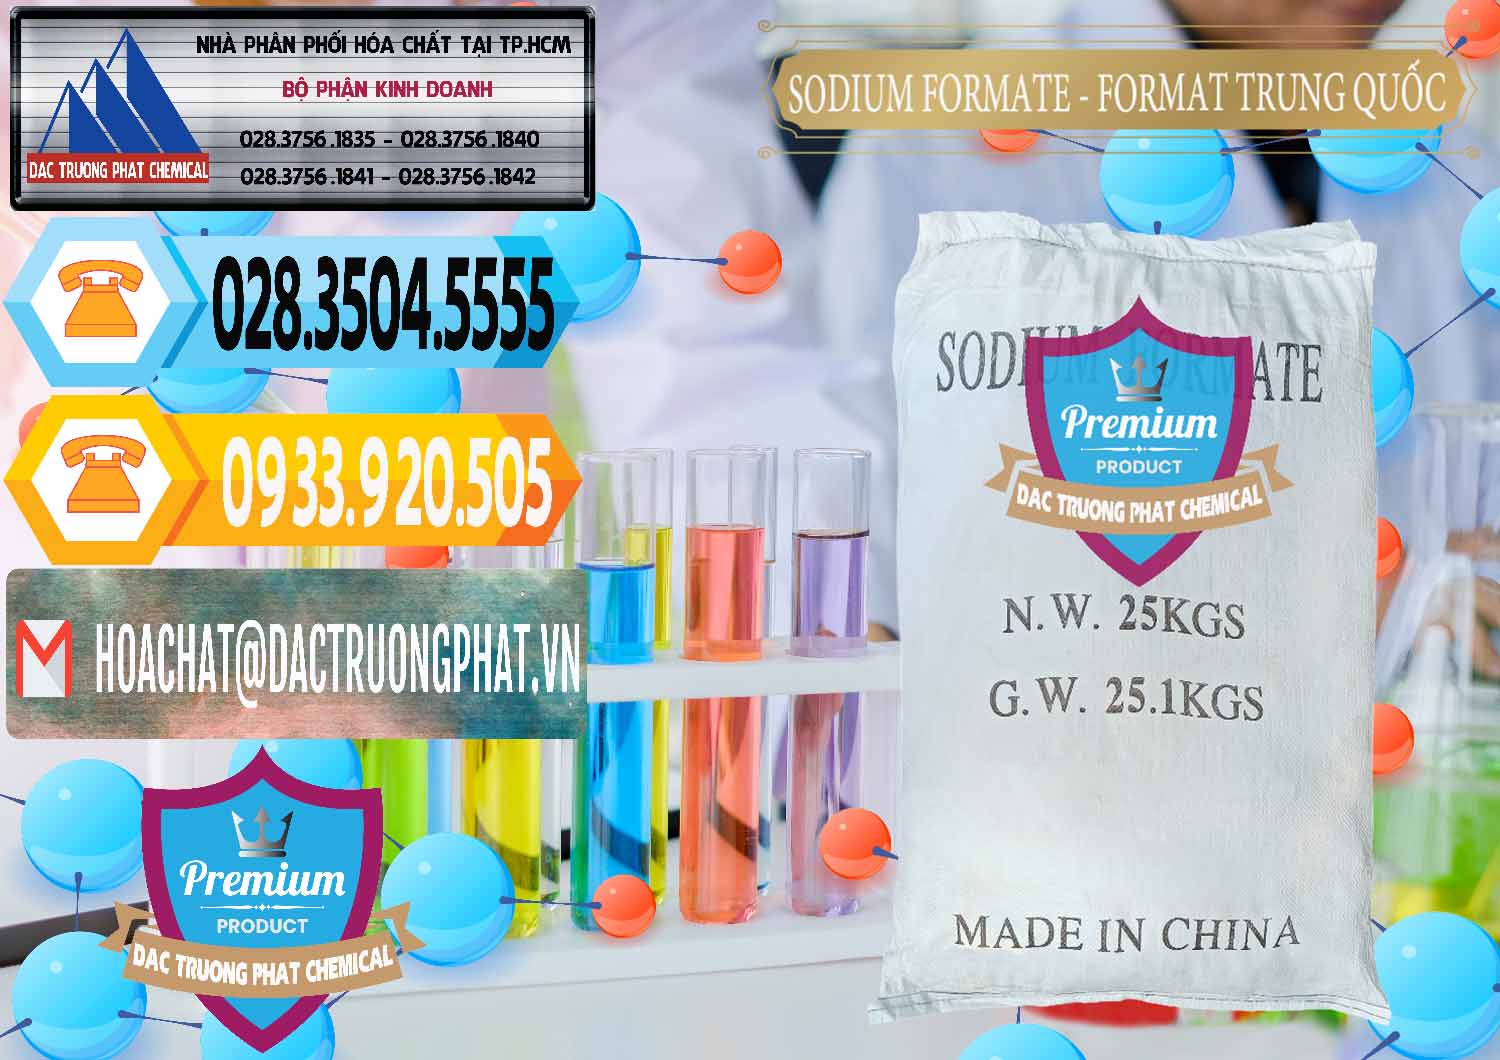 Đơn vị chuyên cung cấp _ bán Sodium Formate - Natri Format Trung Quốc China - 0142 - Đơn vị chuyên nhập khẩu và cung cấp hóa chất tại TP.HCM - hoachattayrua.net